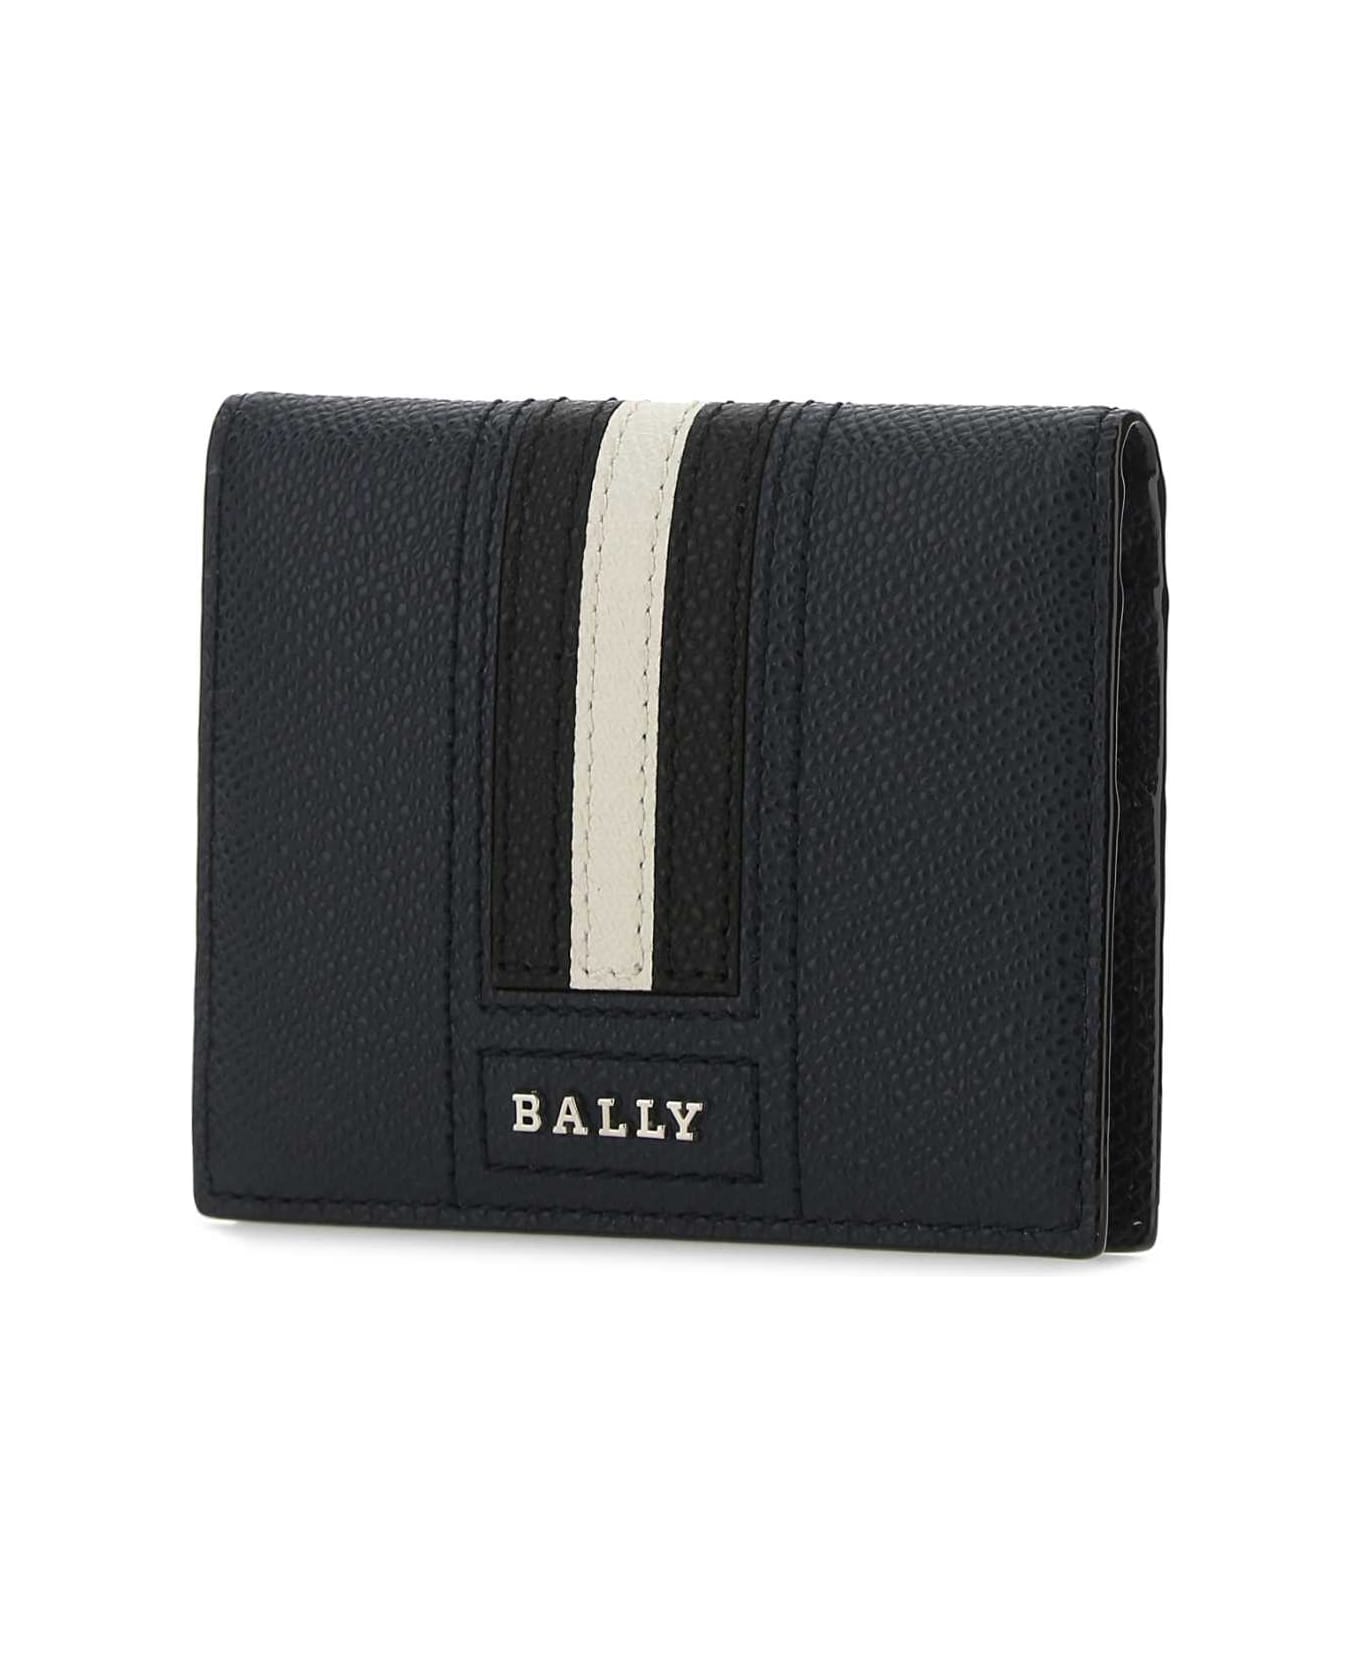 Bally Portafoglio - NEWBLUE 財布